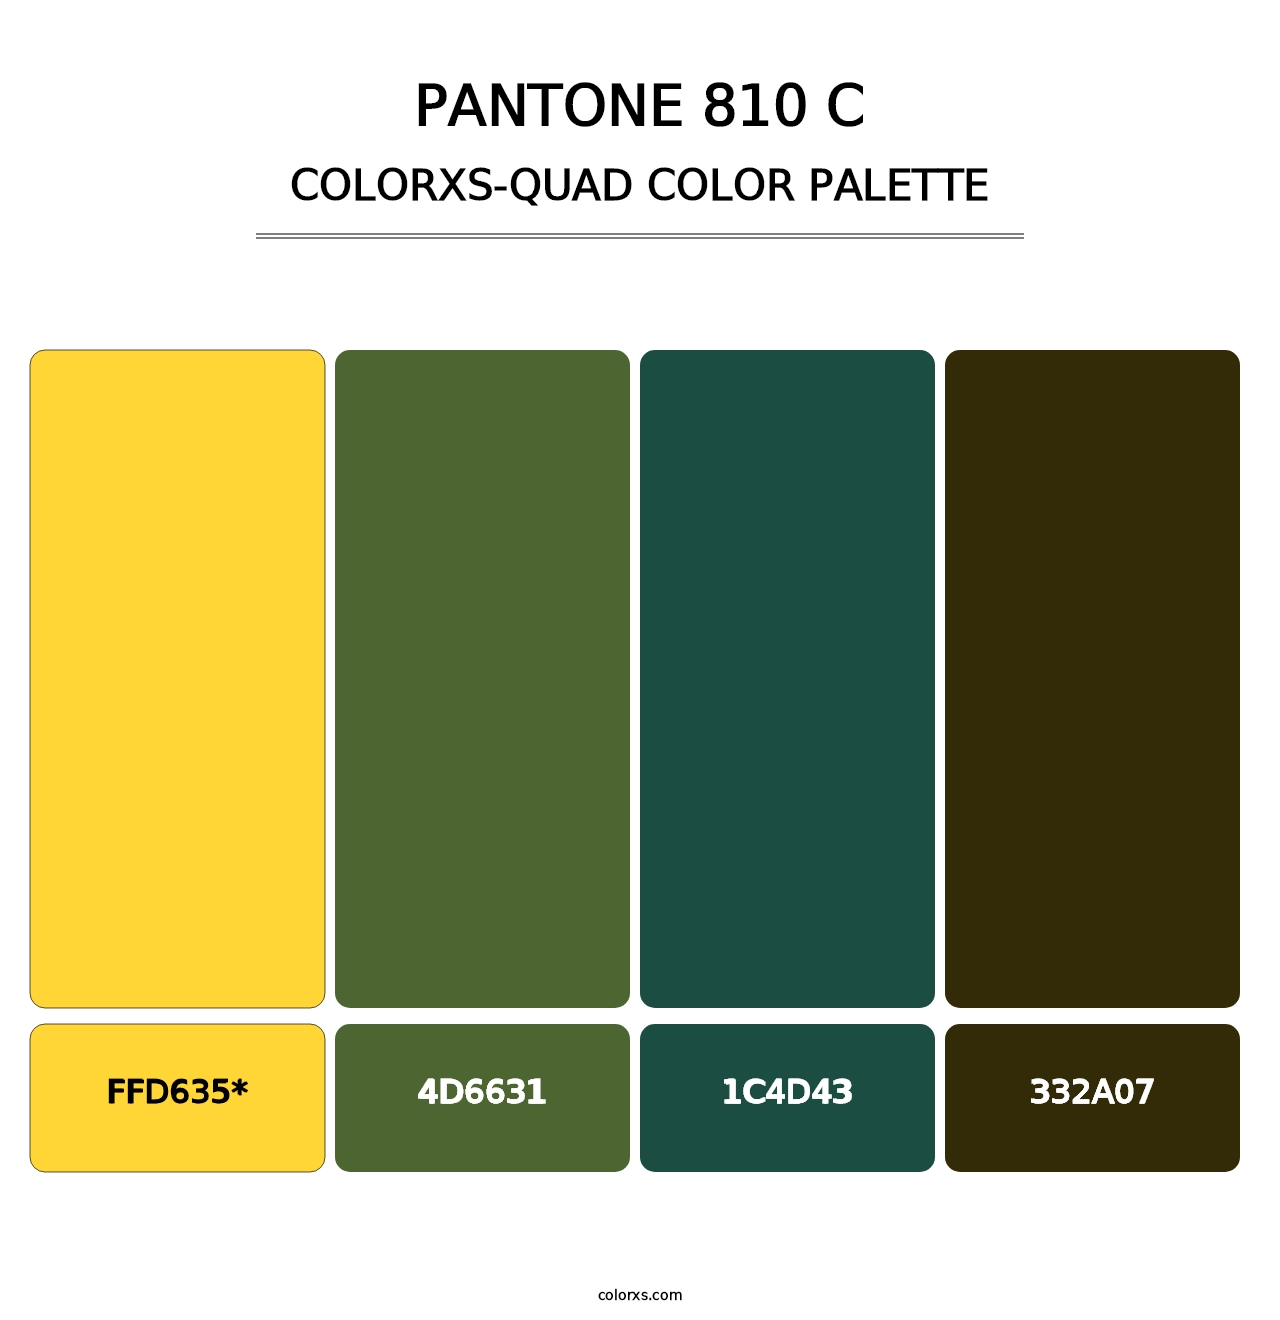 PANTONE 810 C - Colorxs Quad Palette